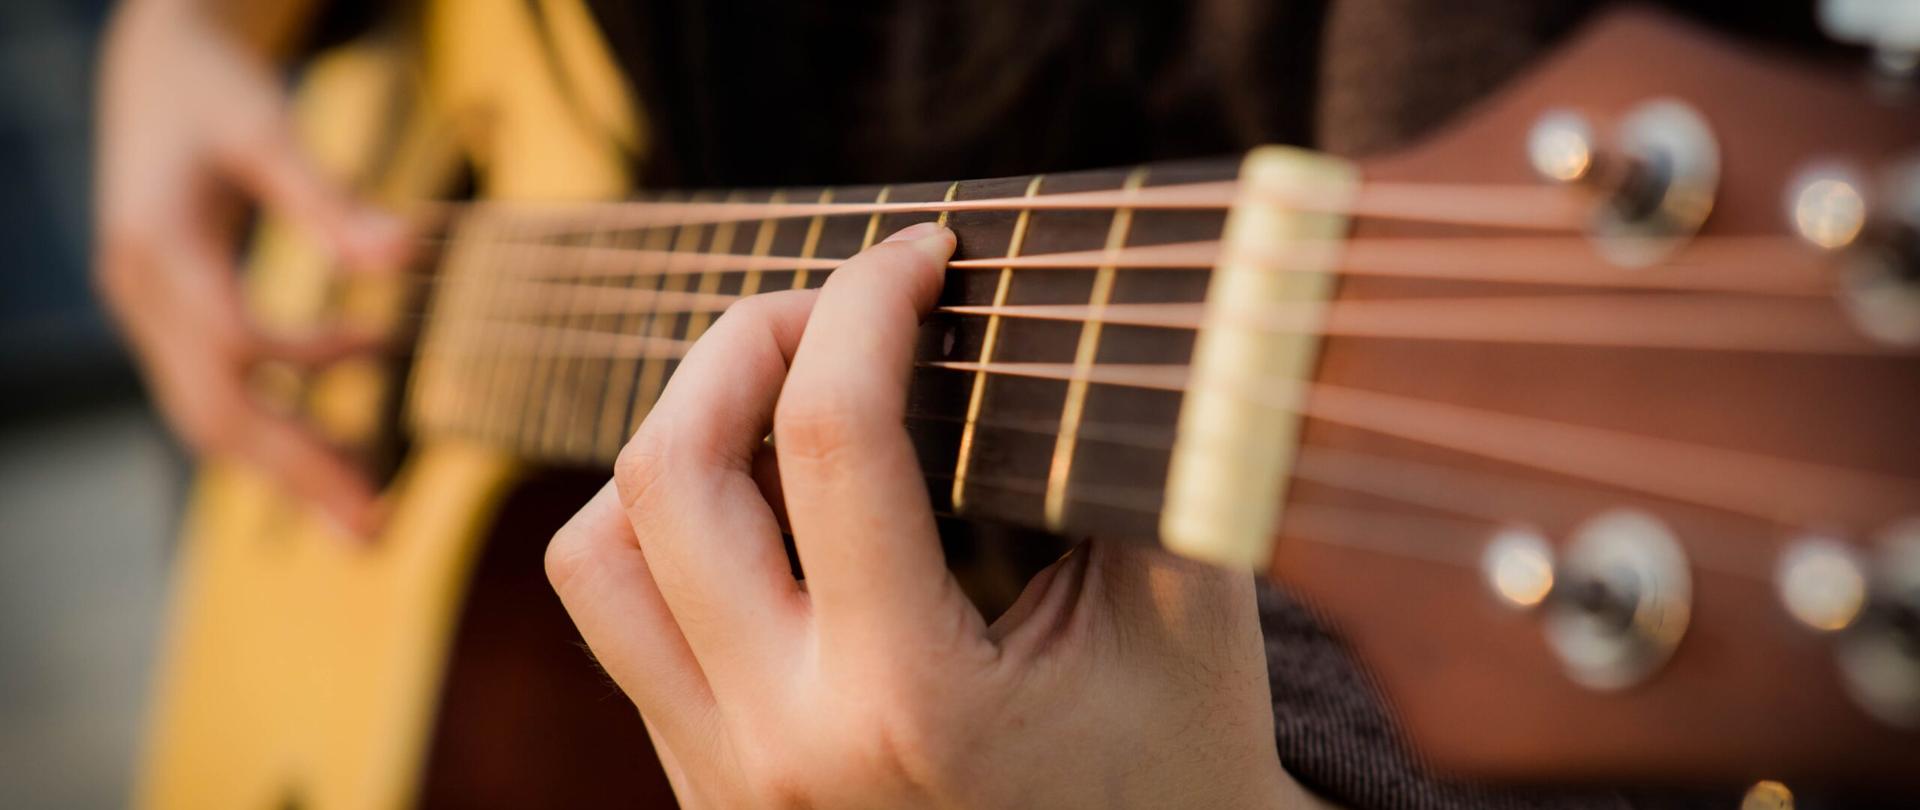 Zdjęcie na którym widać rozmyty fragment gitary oraz dłonie na niej grające